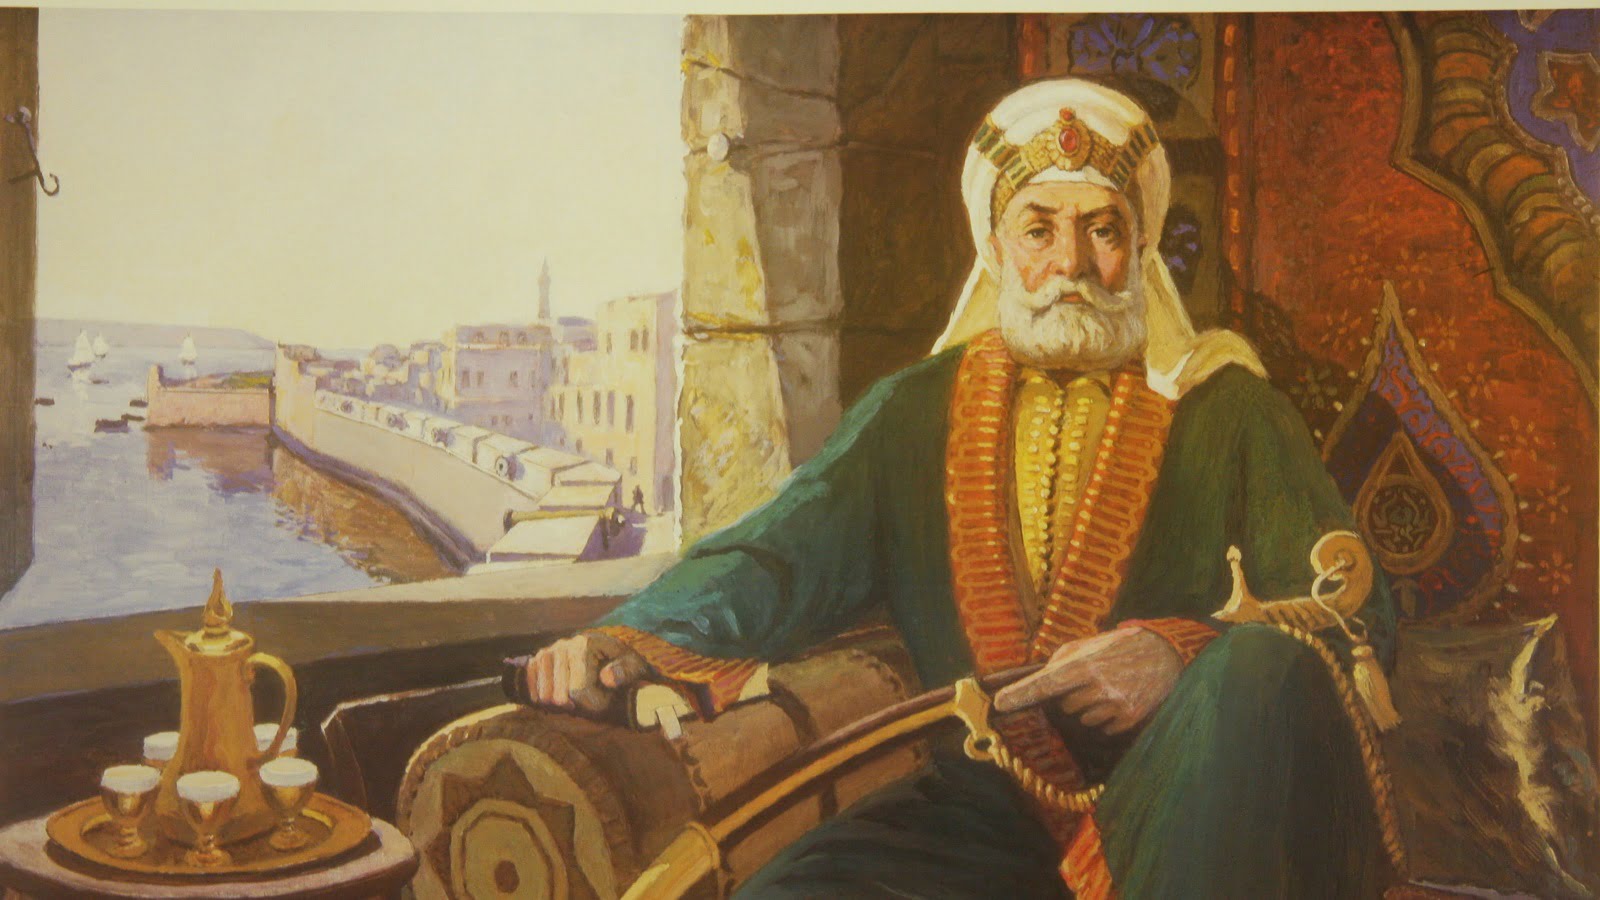 يعد أبو جعفر المنصور المؤسس الحقيقي للدولة العباسية